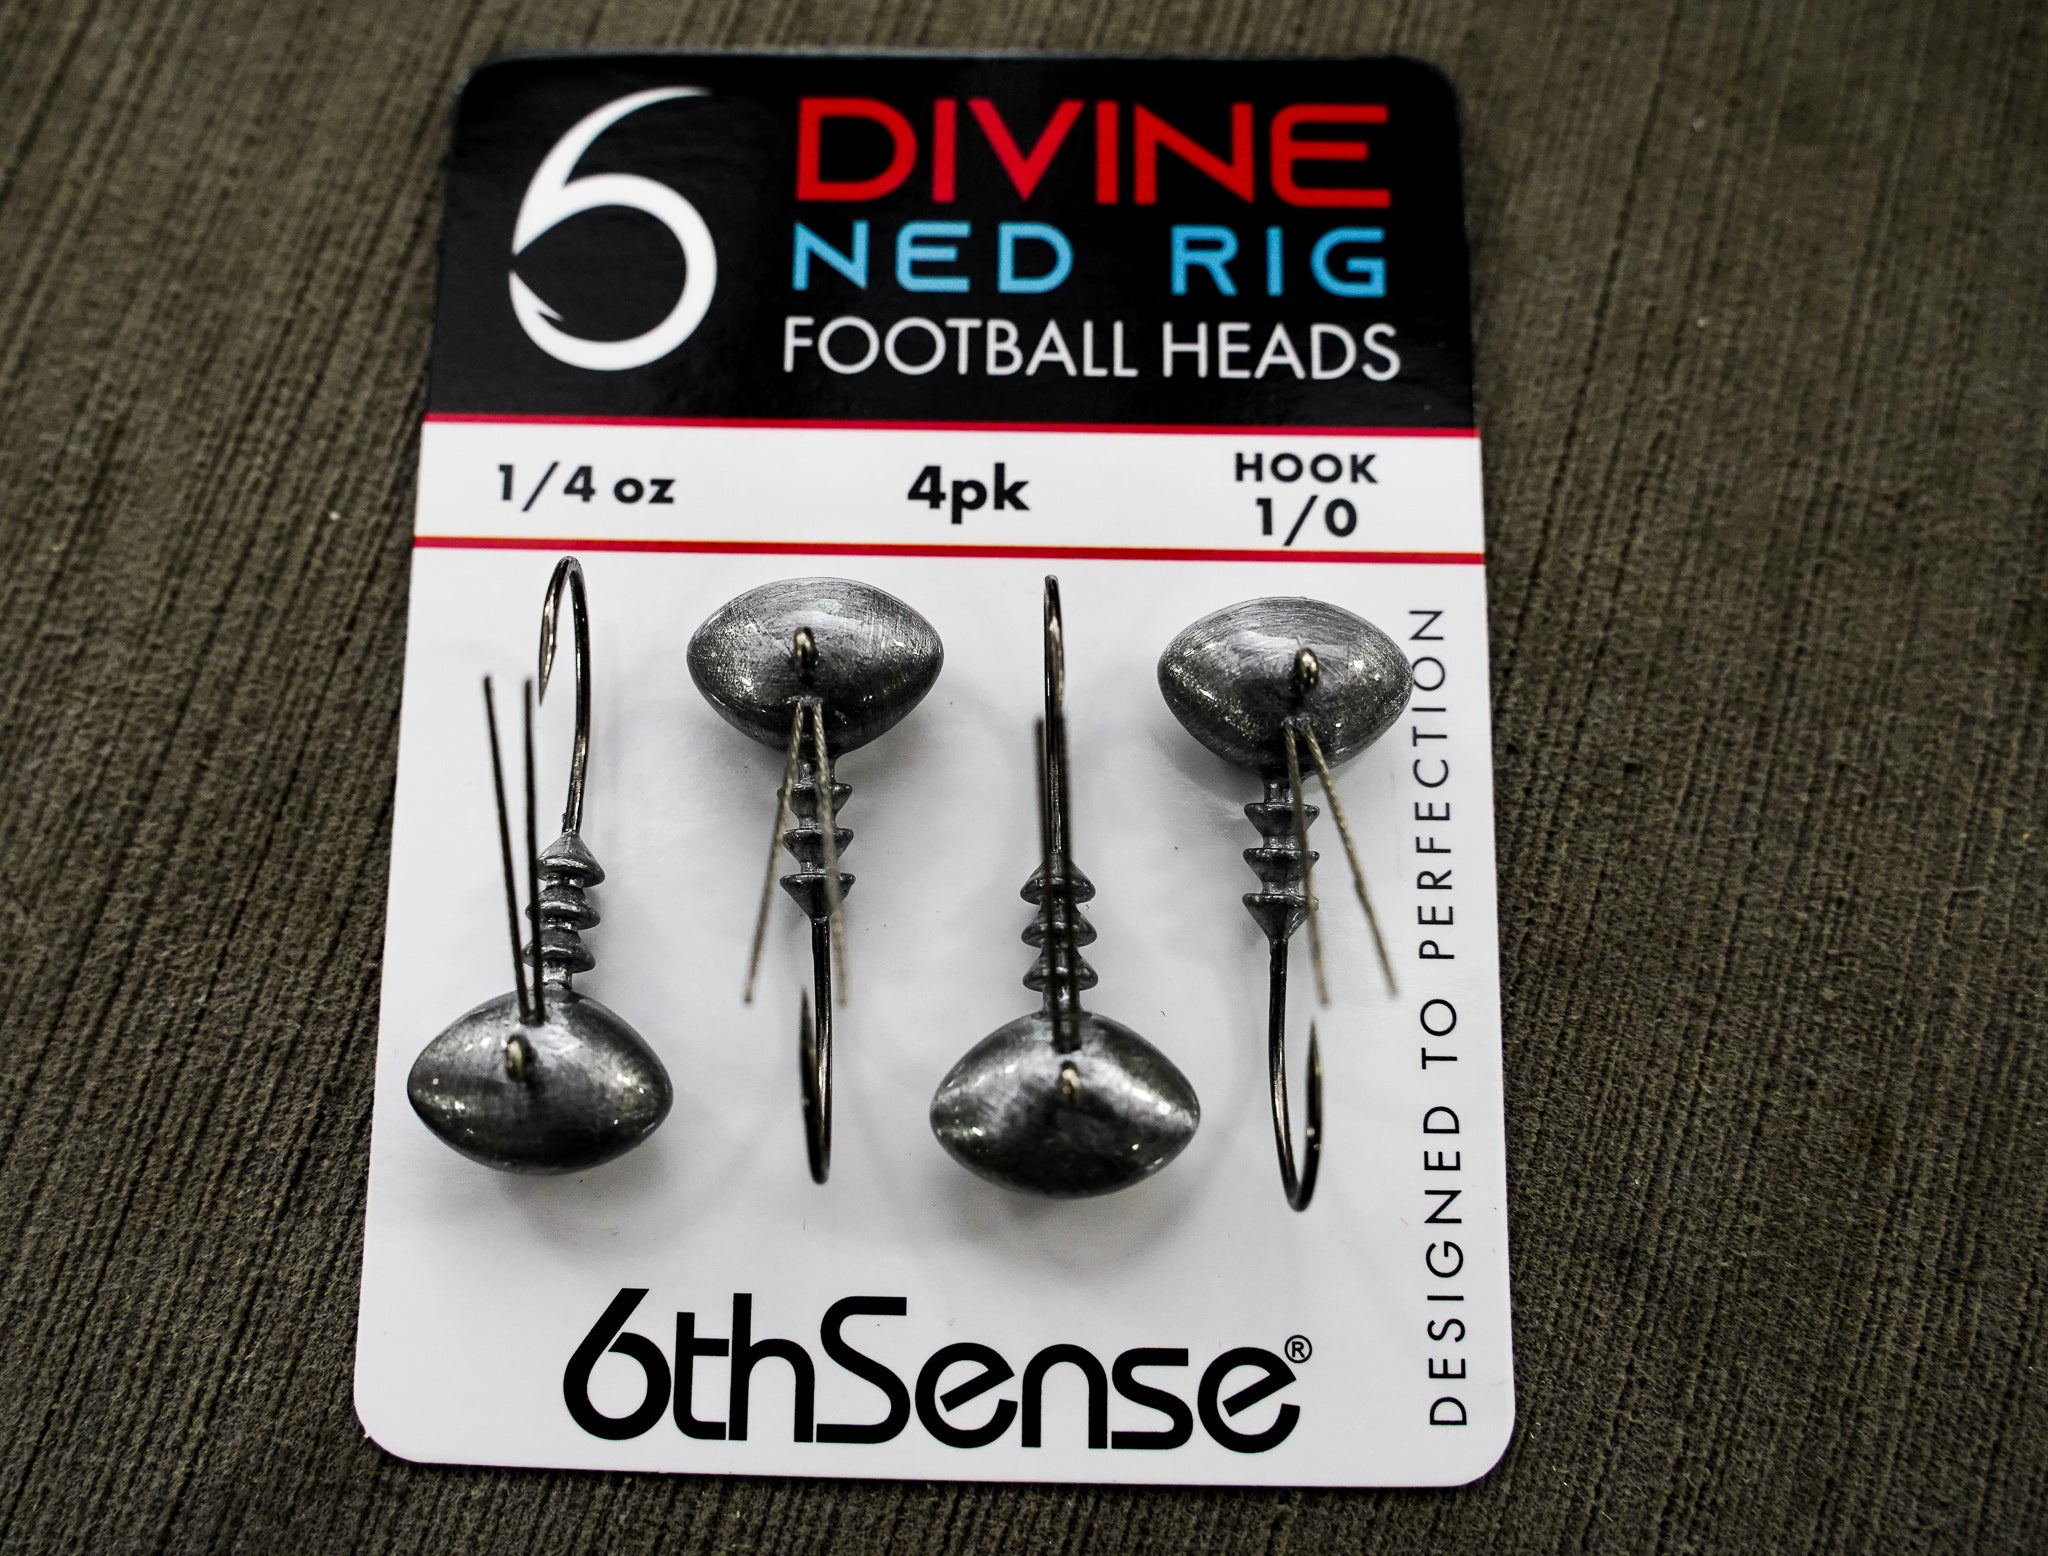 6th Sense Fishing - Divine Ned Rig Football Heads - Raw 3/16oz. 1/0 (4pk)